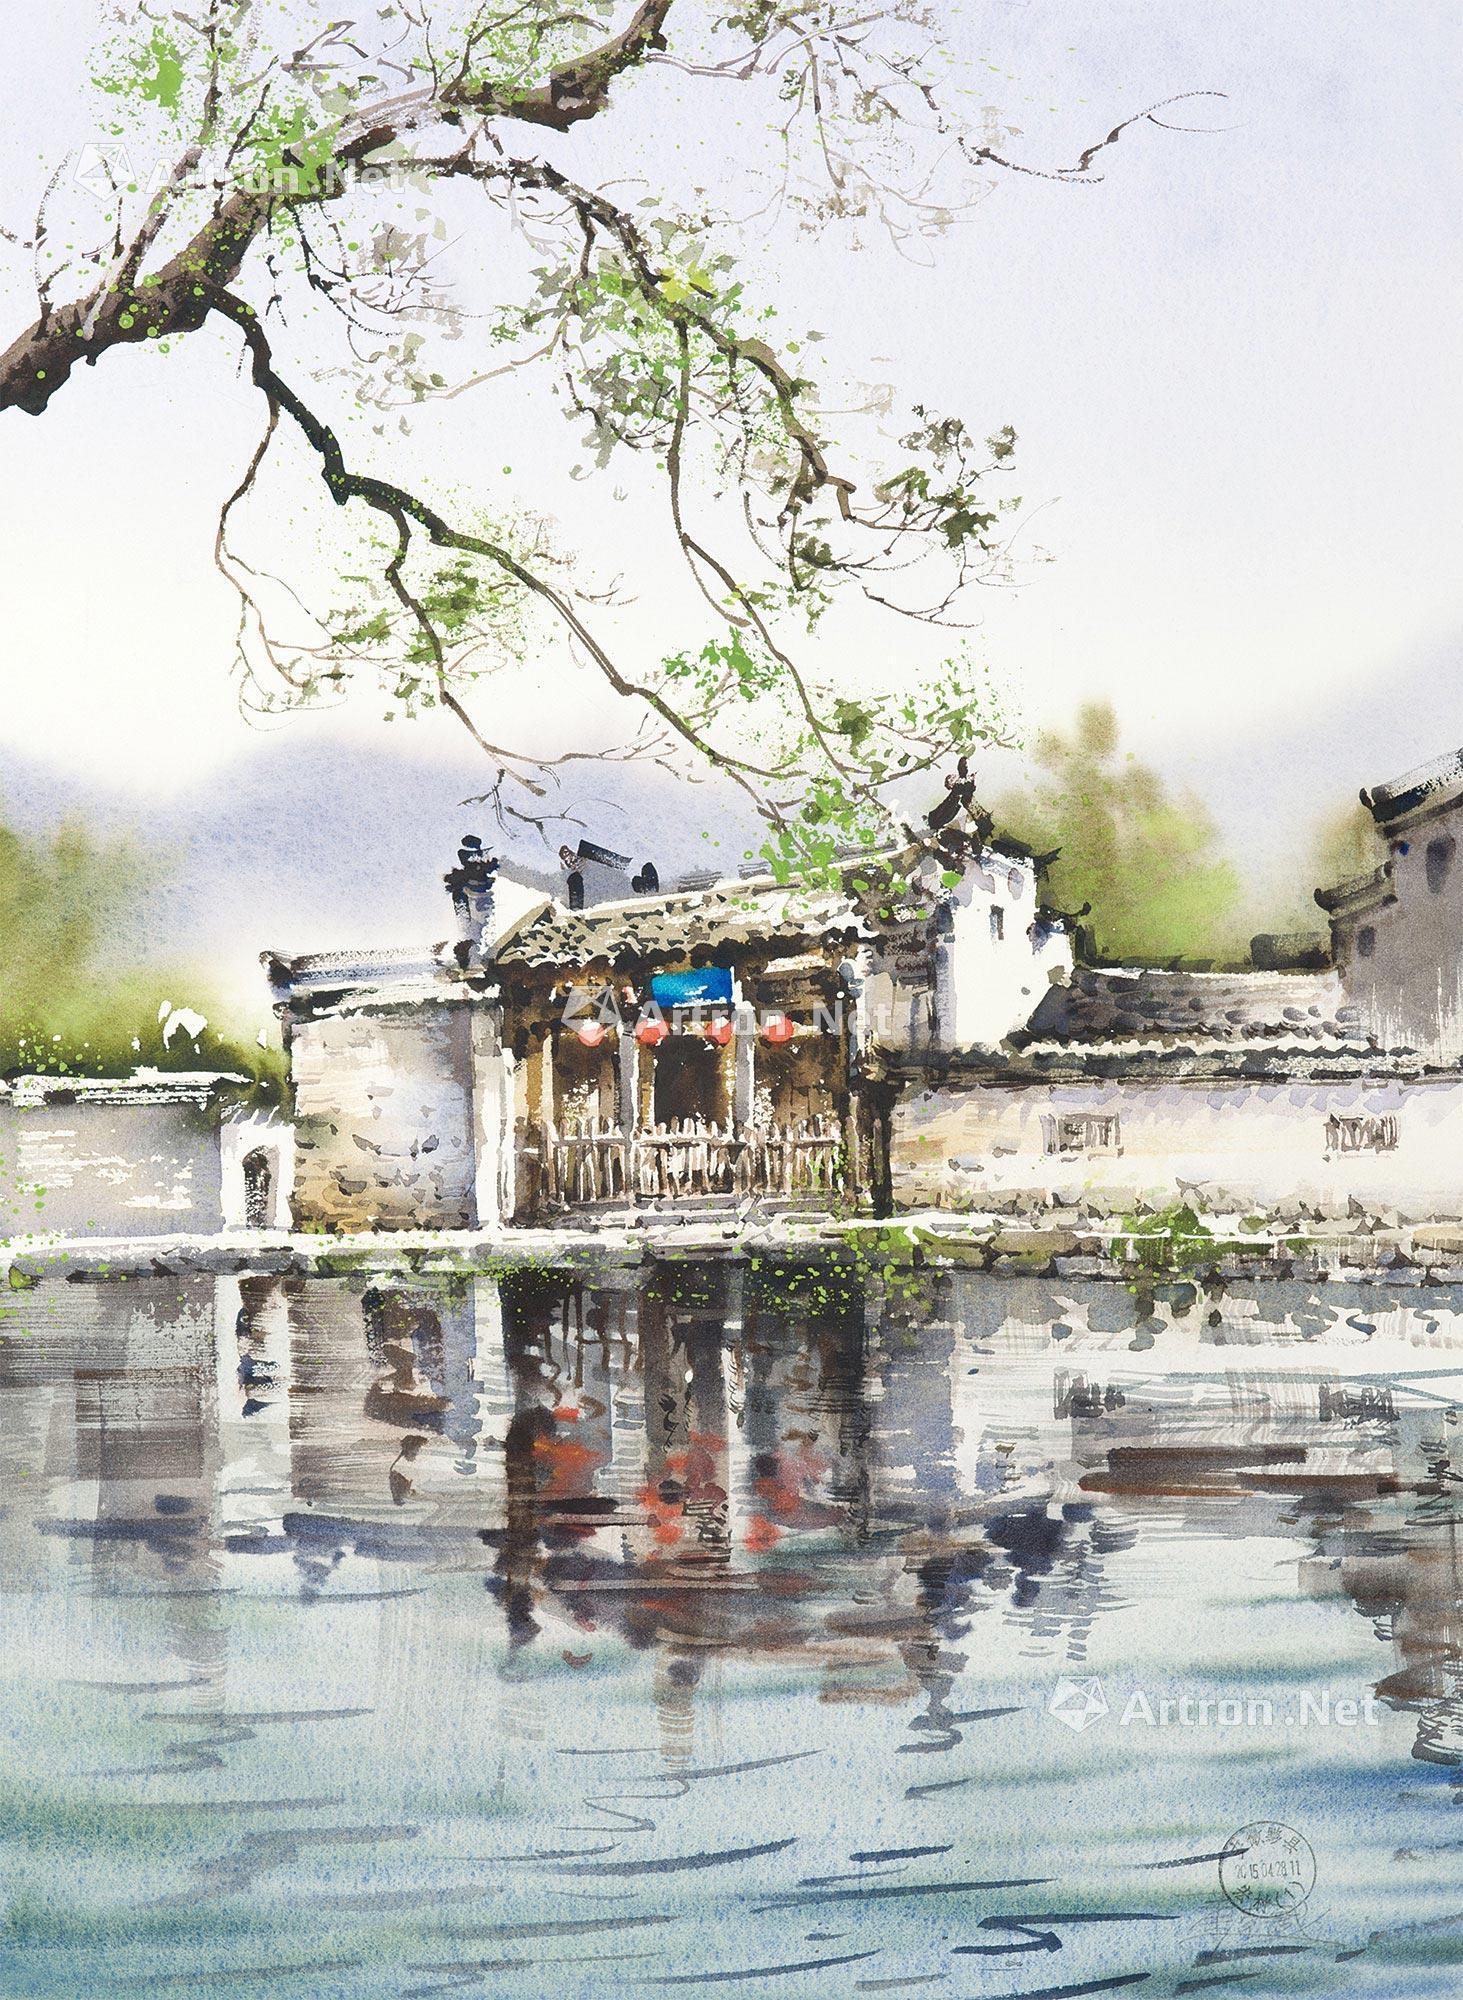 宏村南湖色彩风景作品图片